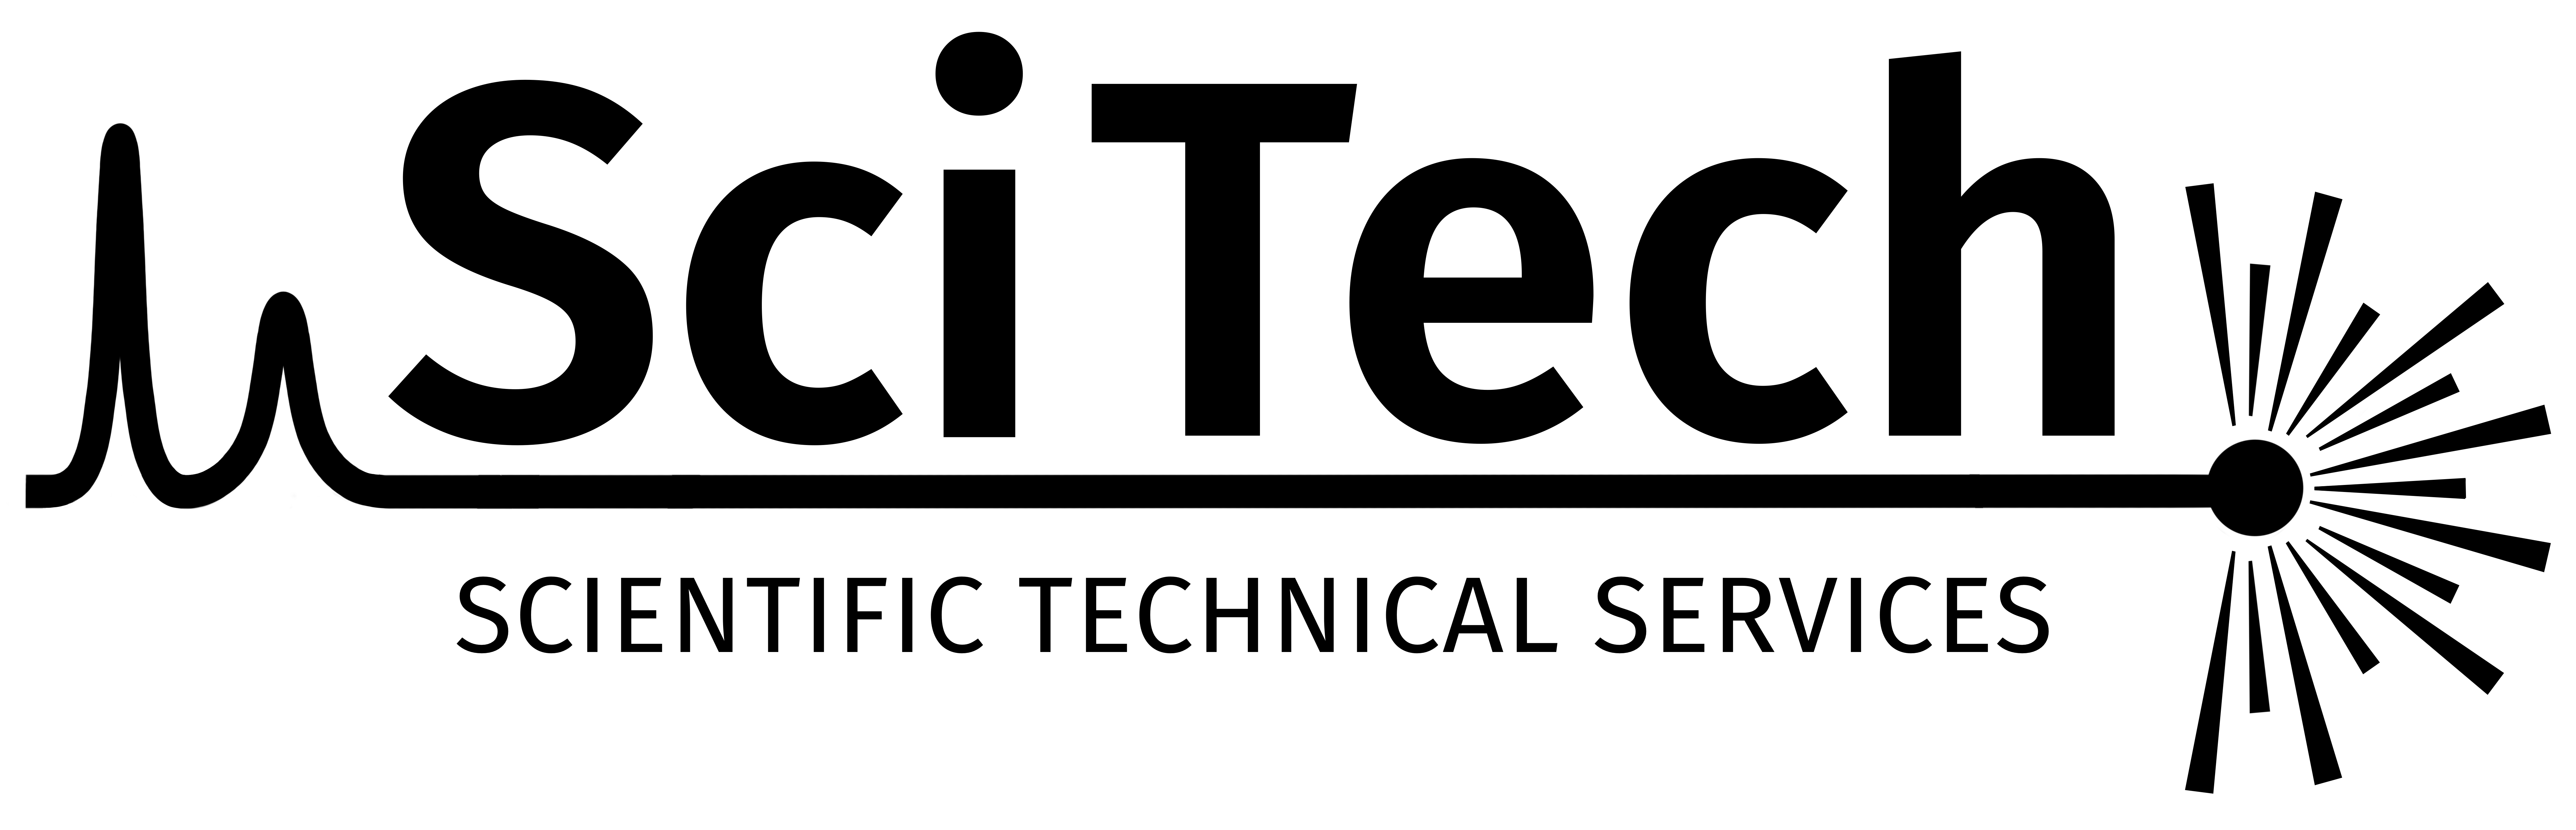 SciTech logo in black